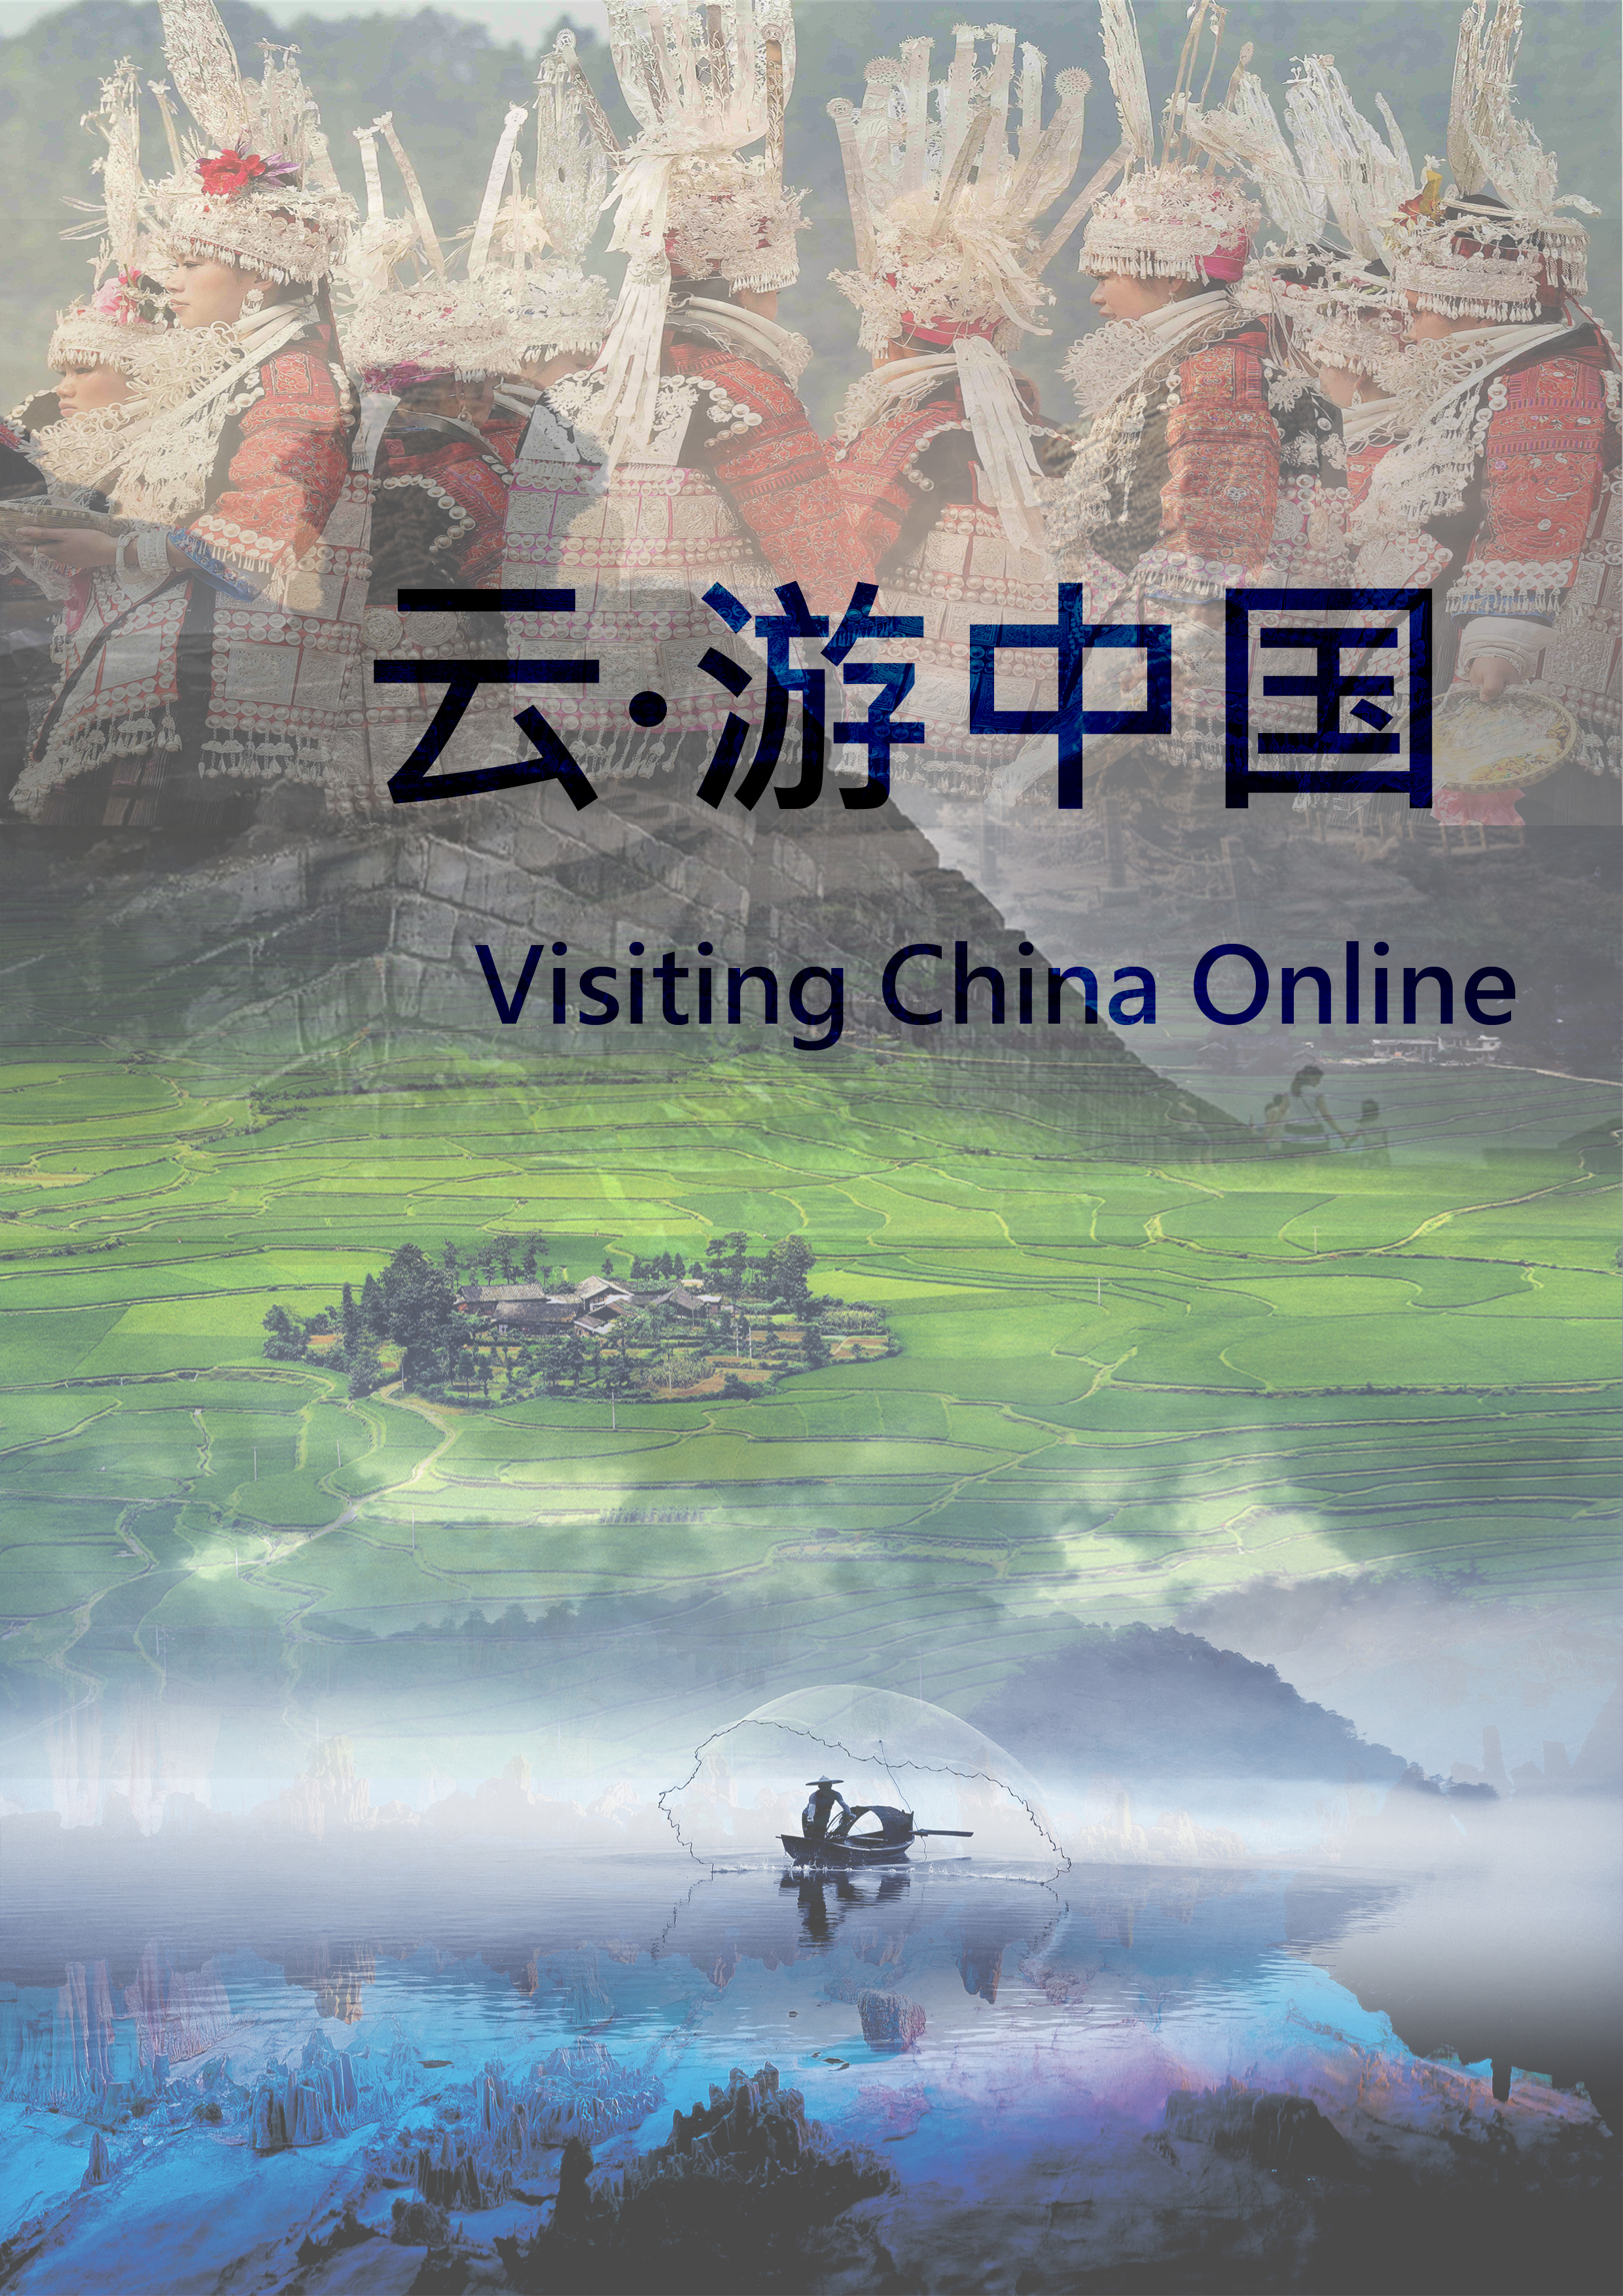 观四时变幻 聆听大自然的耳语—中国旅游日与斯德哥尔摩中国文化中心畅游美丽中国（一）| Visiting Beautiful China Online on China Tourism Day